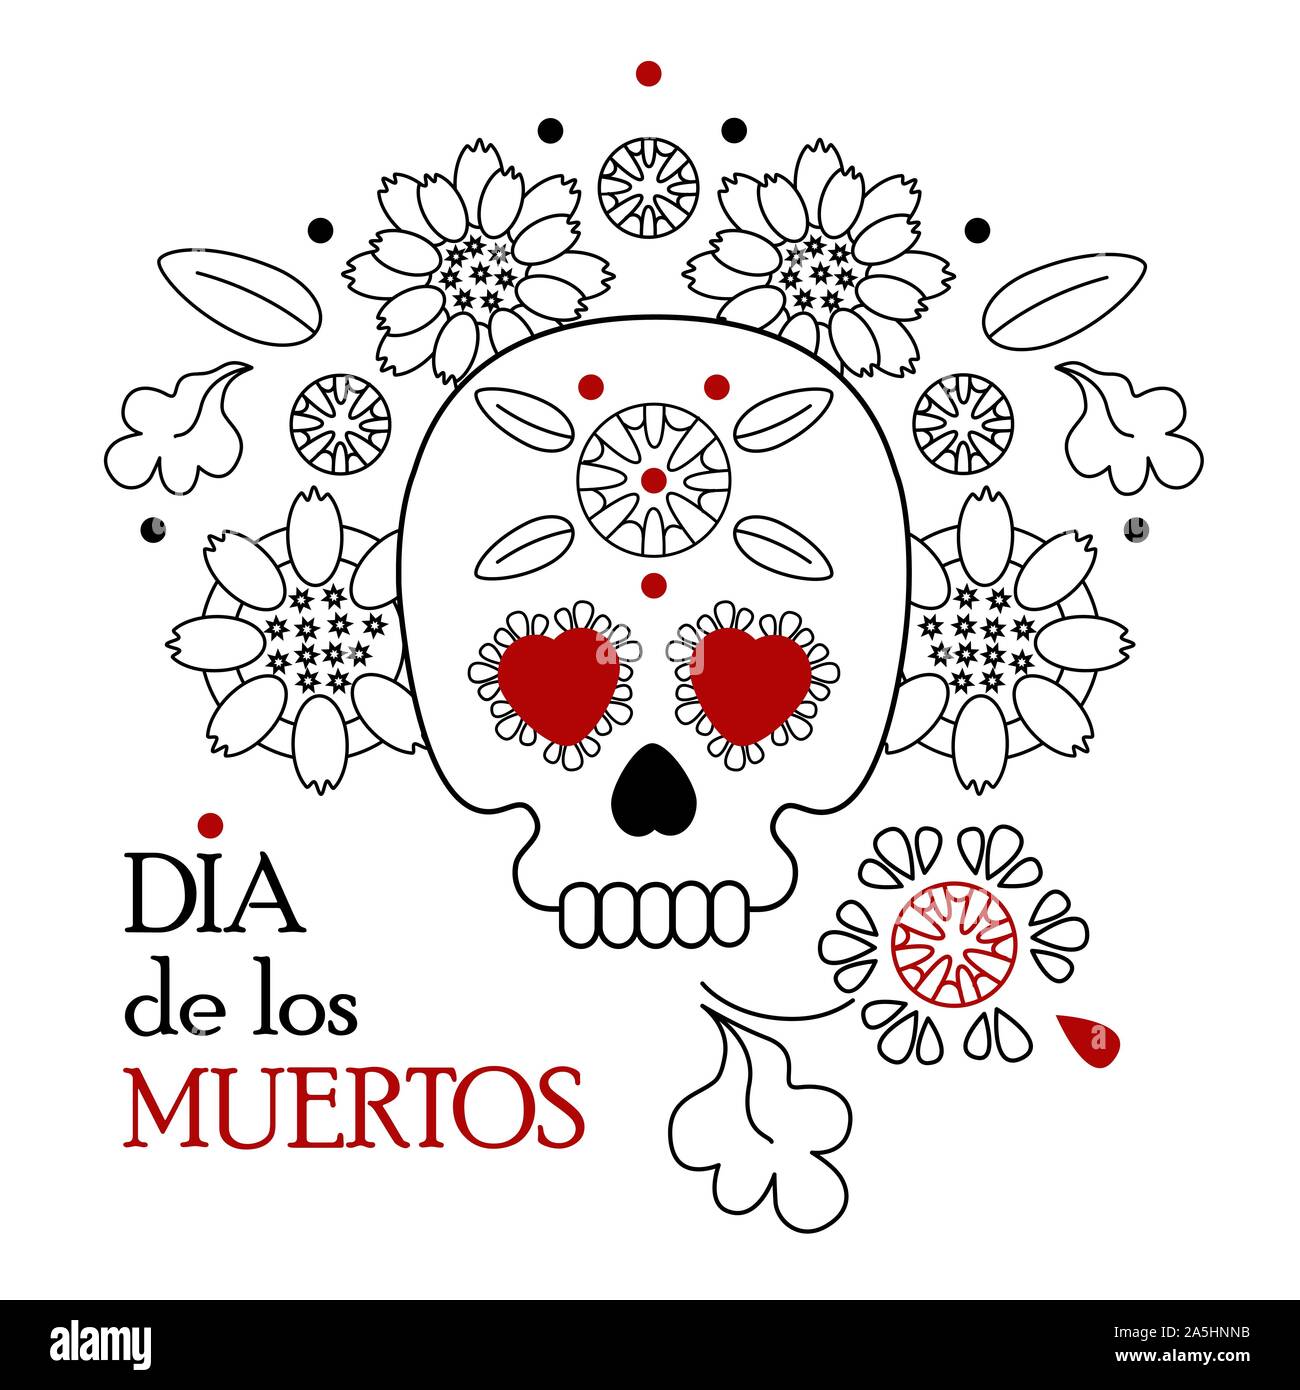 Fête des morts, Dia de los muertos fond blanc, bannière et carte de souhaits concept avec crâne en sucre ou calavera, fleurs et texte. Illustration de Vecteur